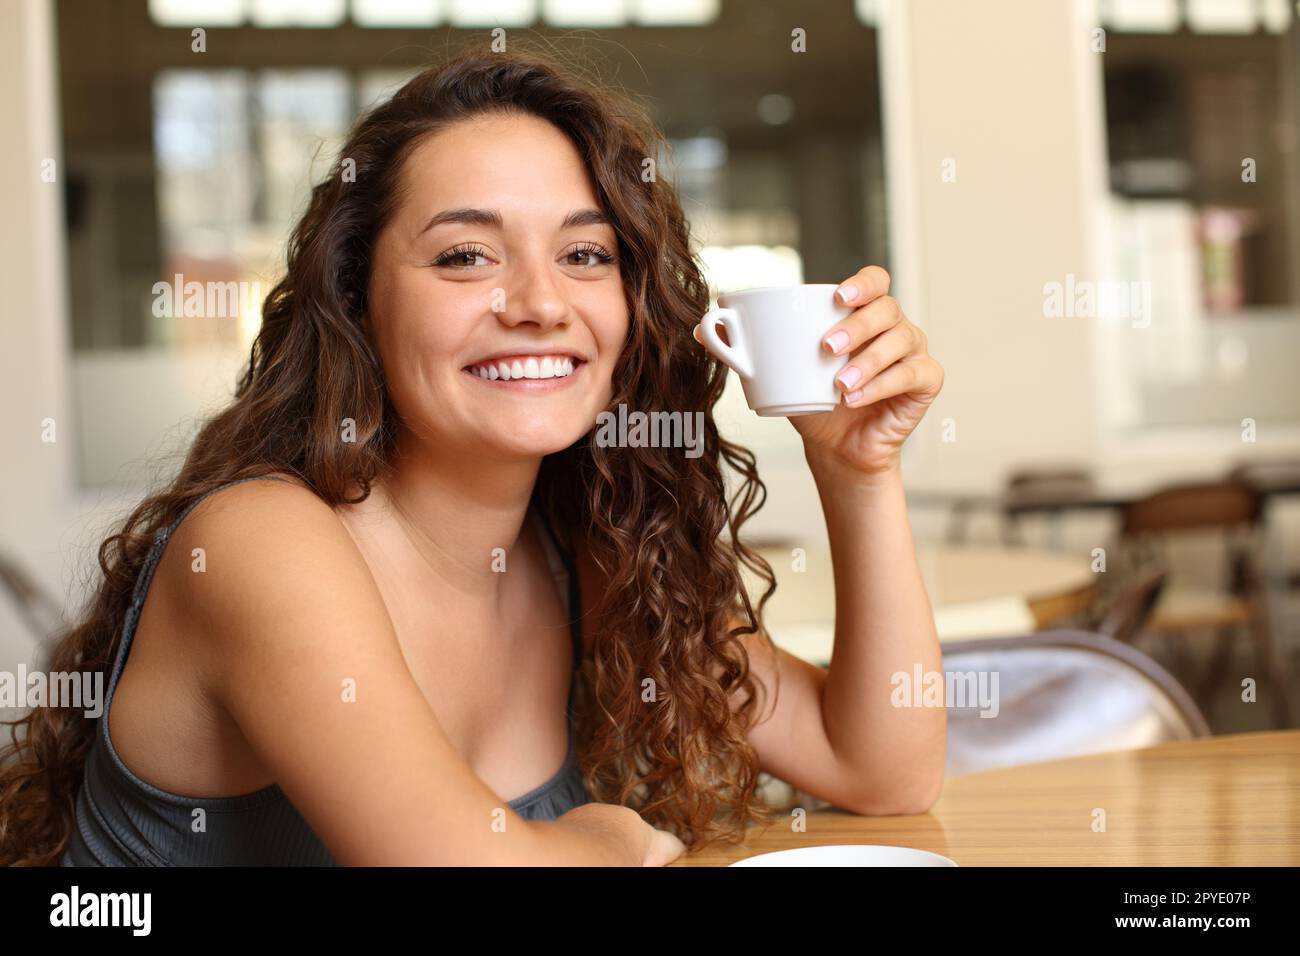 Femme heureuse tenant une tasse à café vous regardant dans un bar Banque D'Images